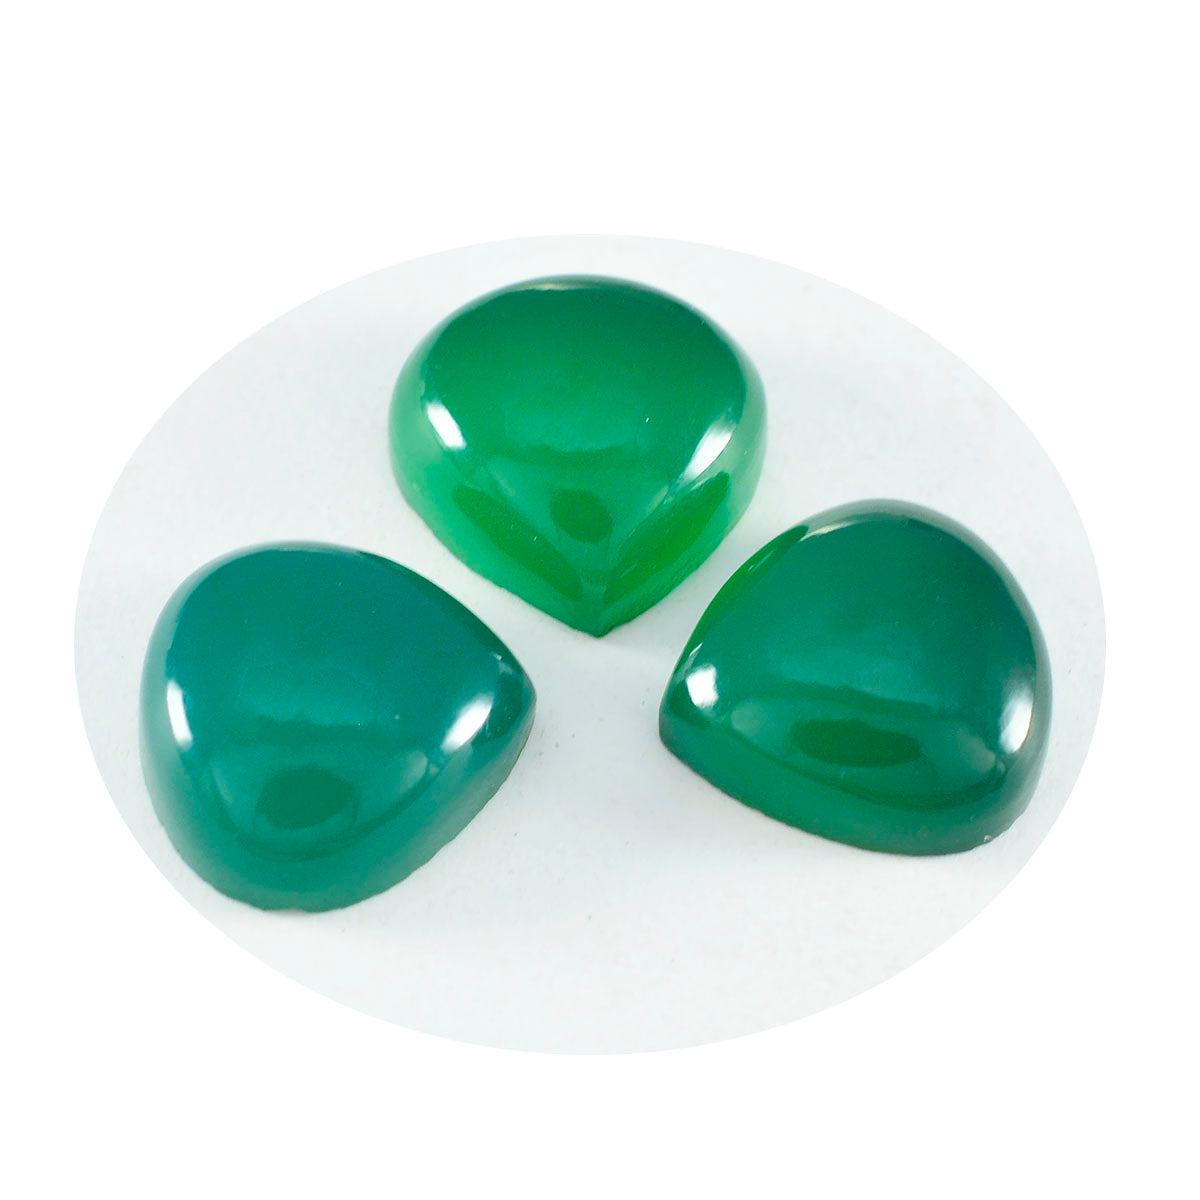 Riyogems 1PC groene onyx cabochon 13x13 mm hartvorm uitstekende kwaliteit losse edelstenen